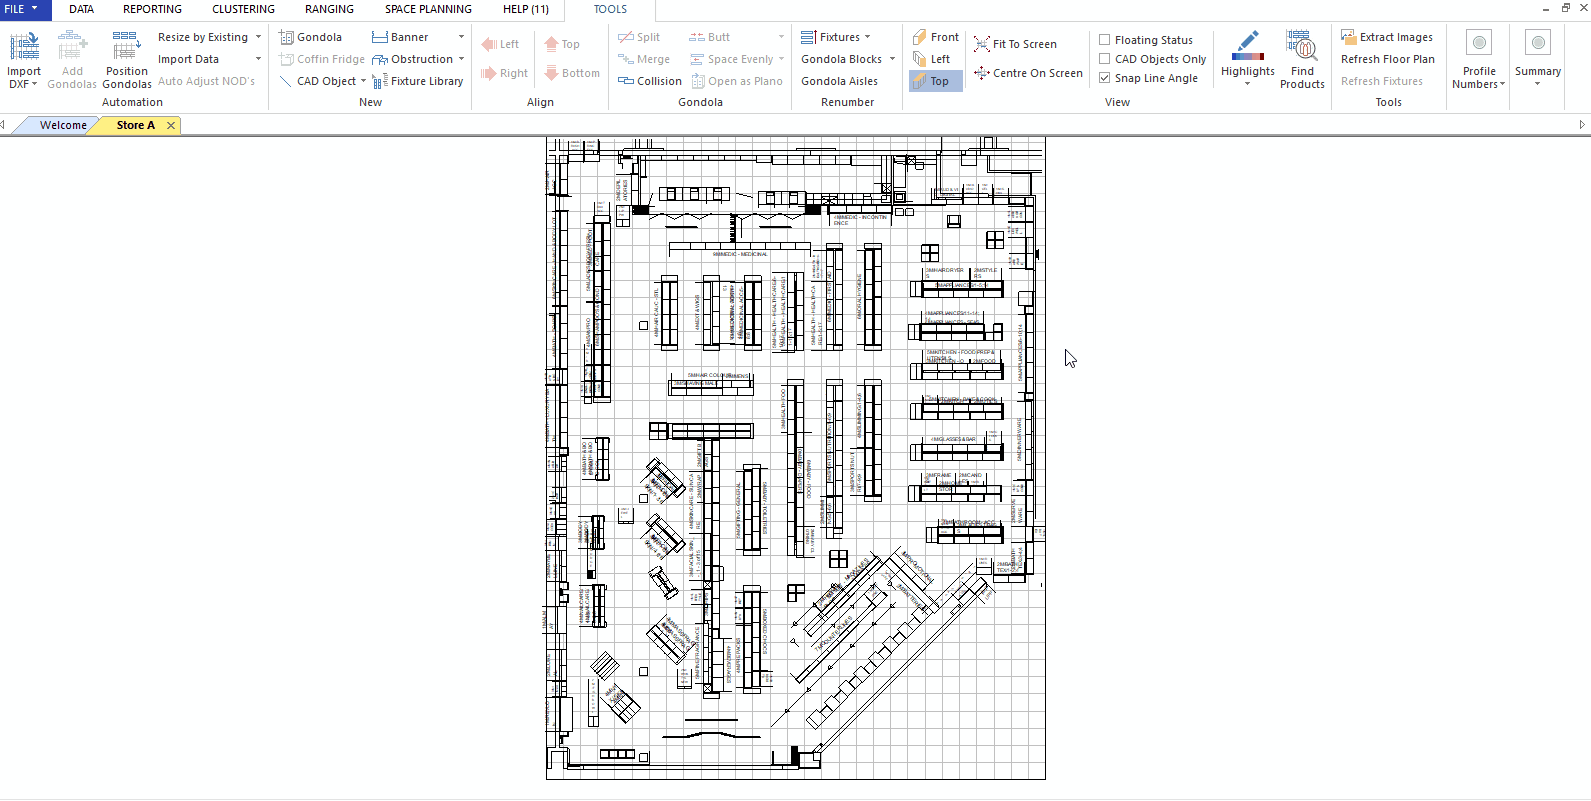 DotActiv Floor Plan Highlight Feature